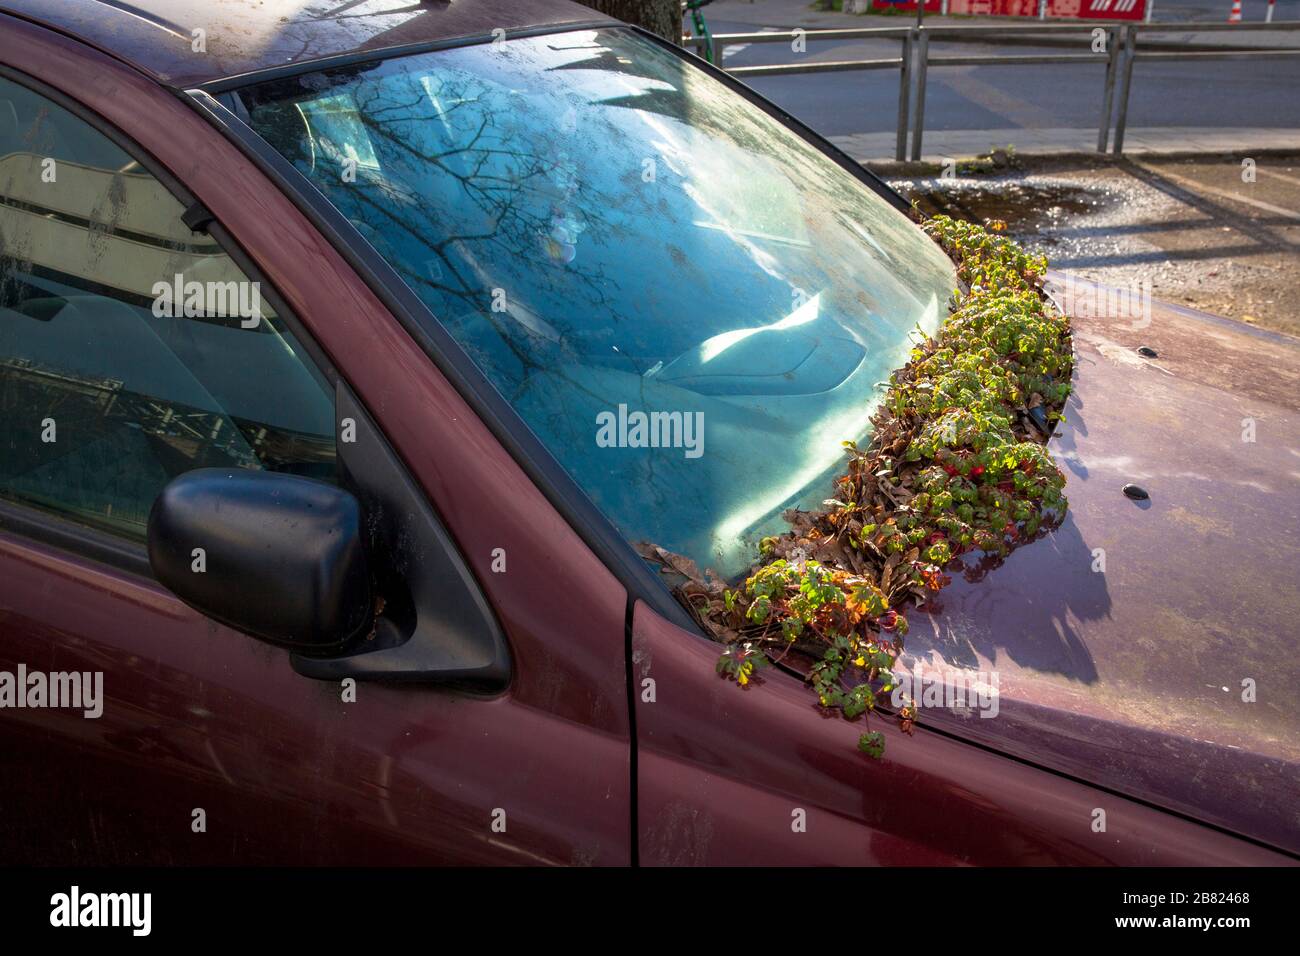 Planta crece en el parabrisas de un coche estacionado ilegalmente cerca de la calle Konrad-Adenauer-Ufer, Colonia, Alemania. Pflanze waechst an der Windschutzsch Foto de stock